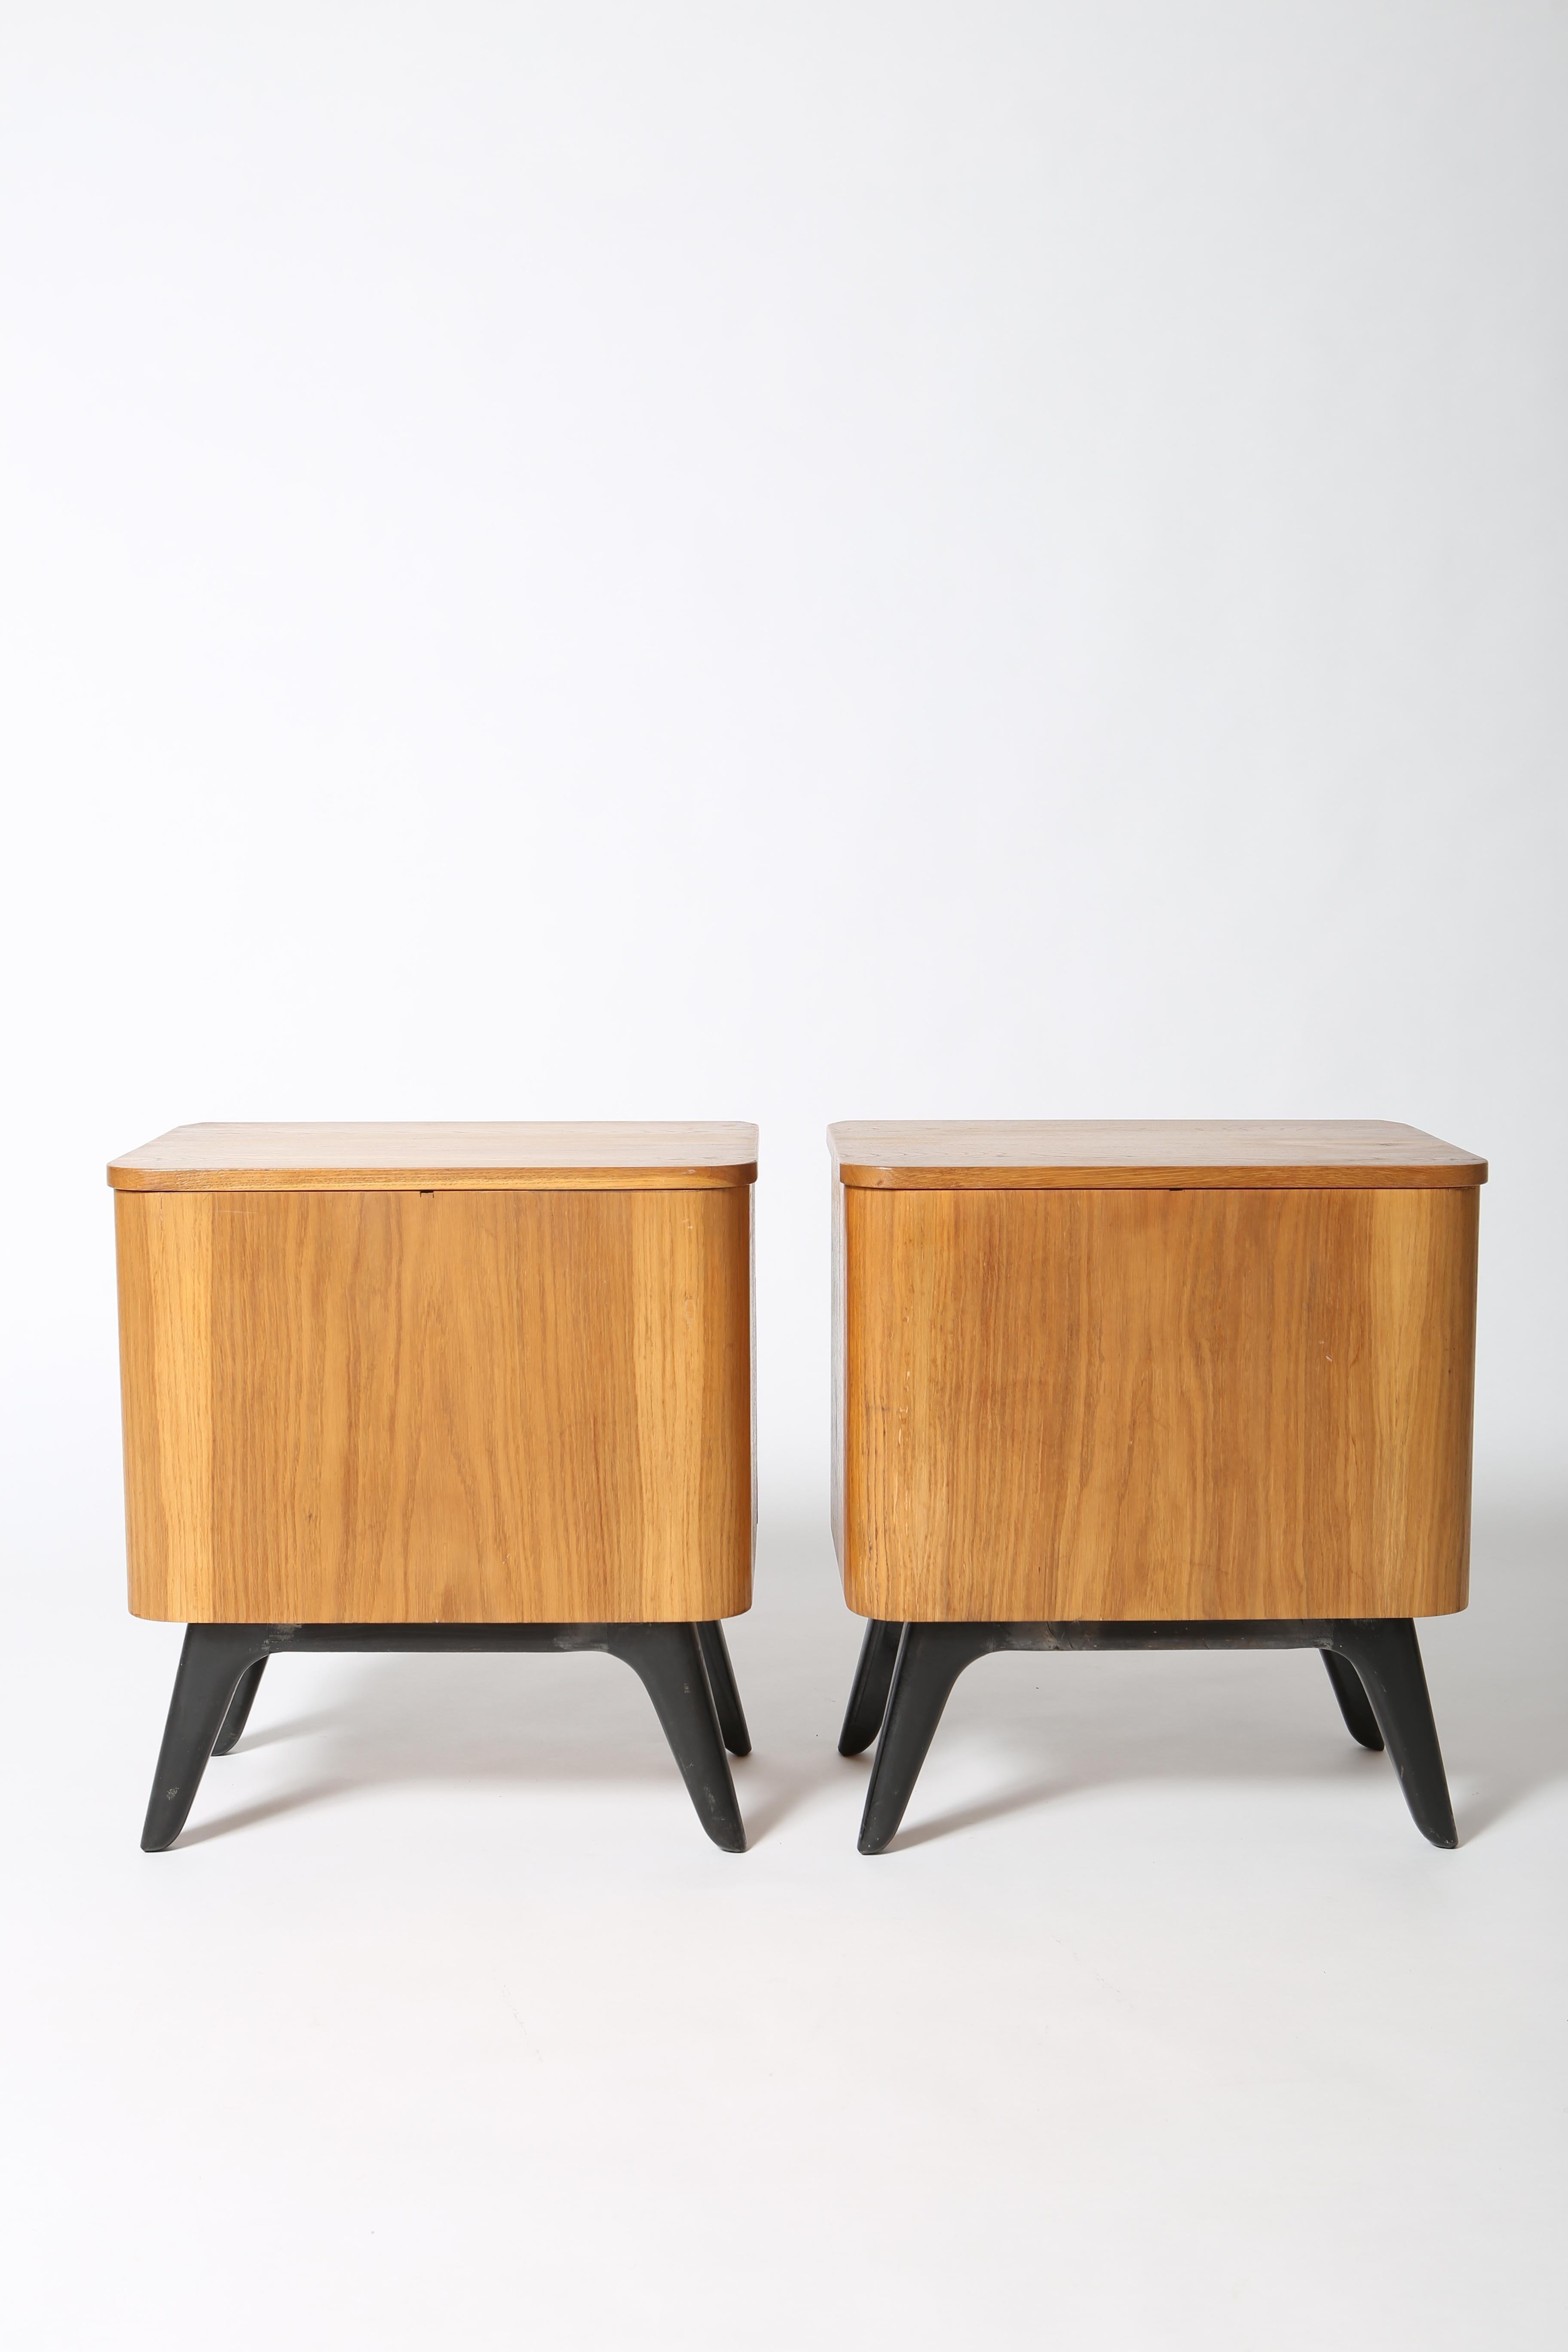 Oak Mid Century Czech Modernist side tables by Jindrich Halabala